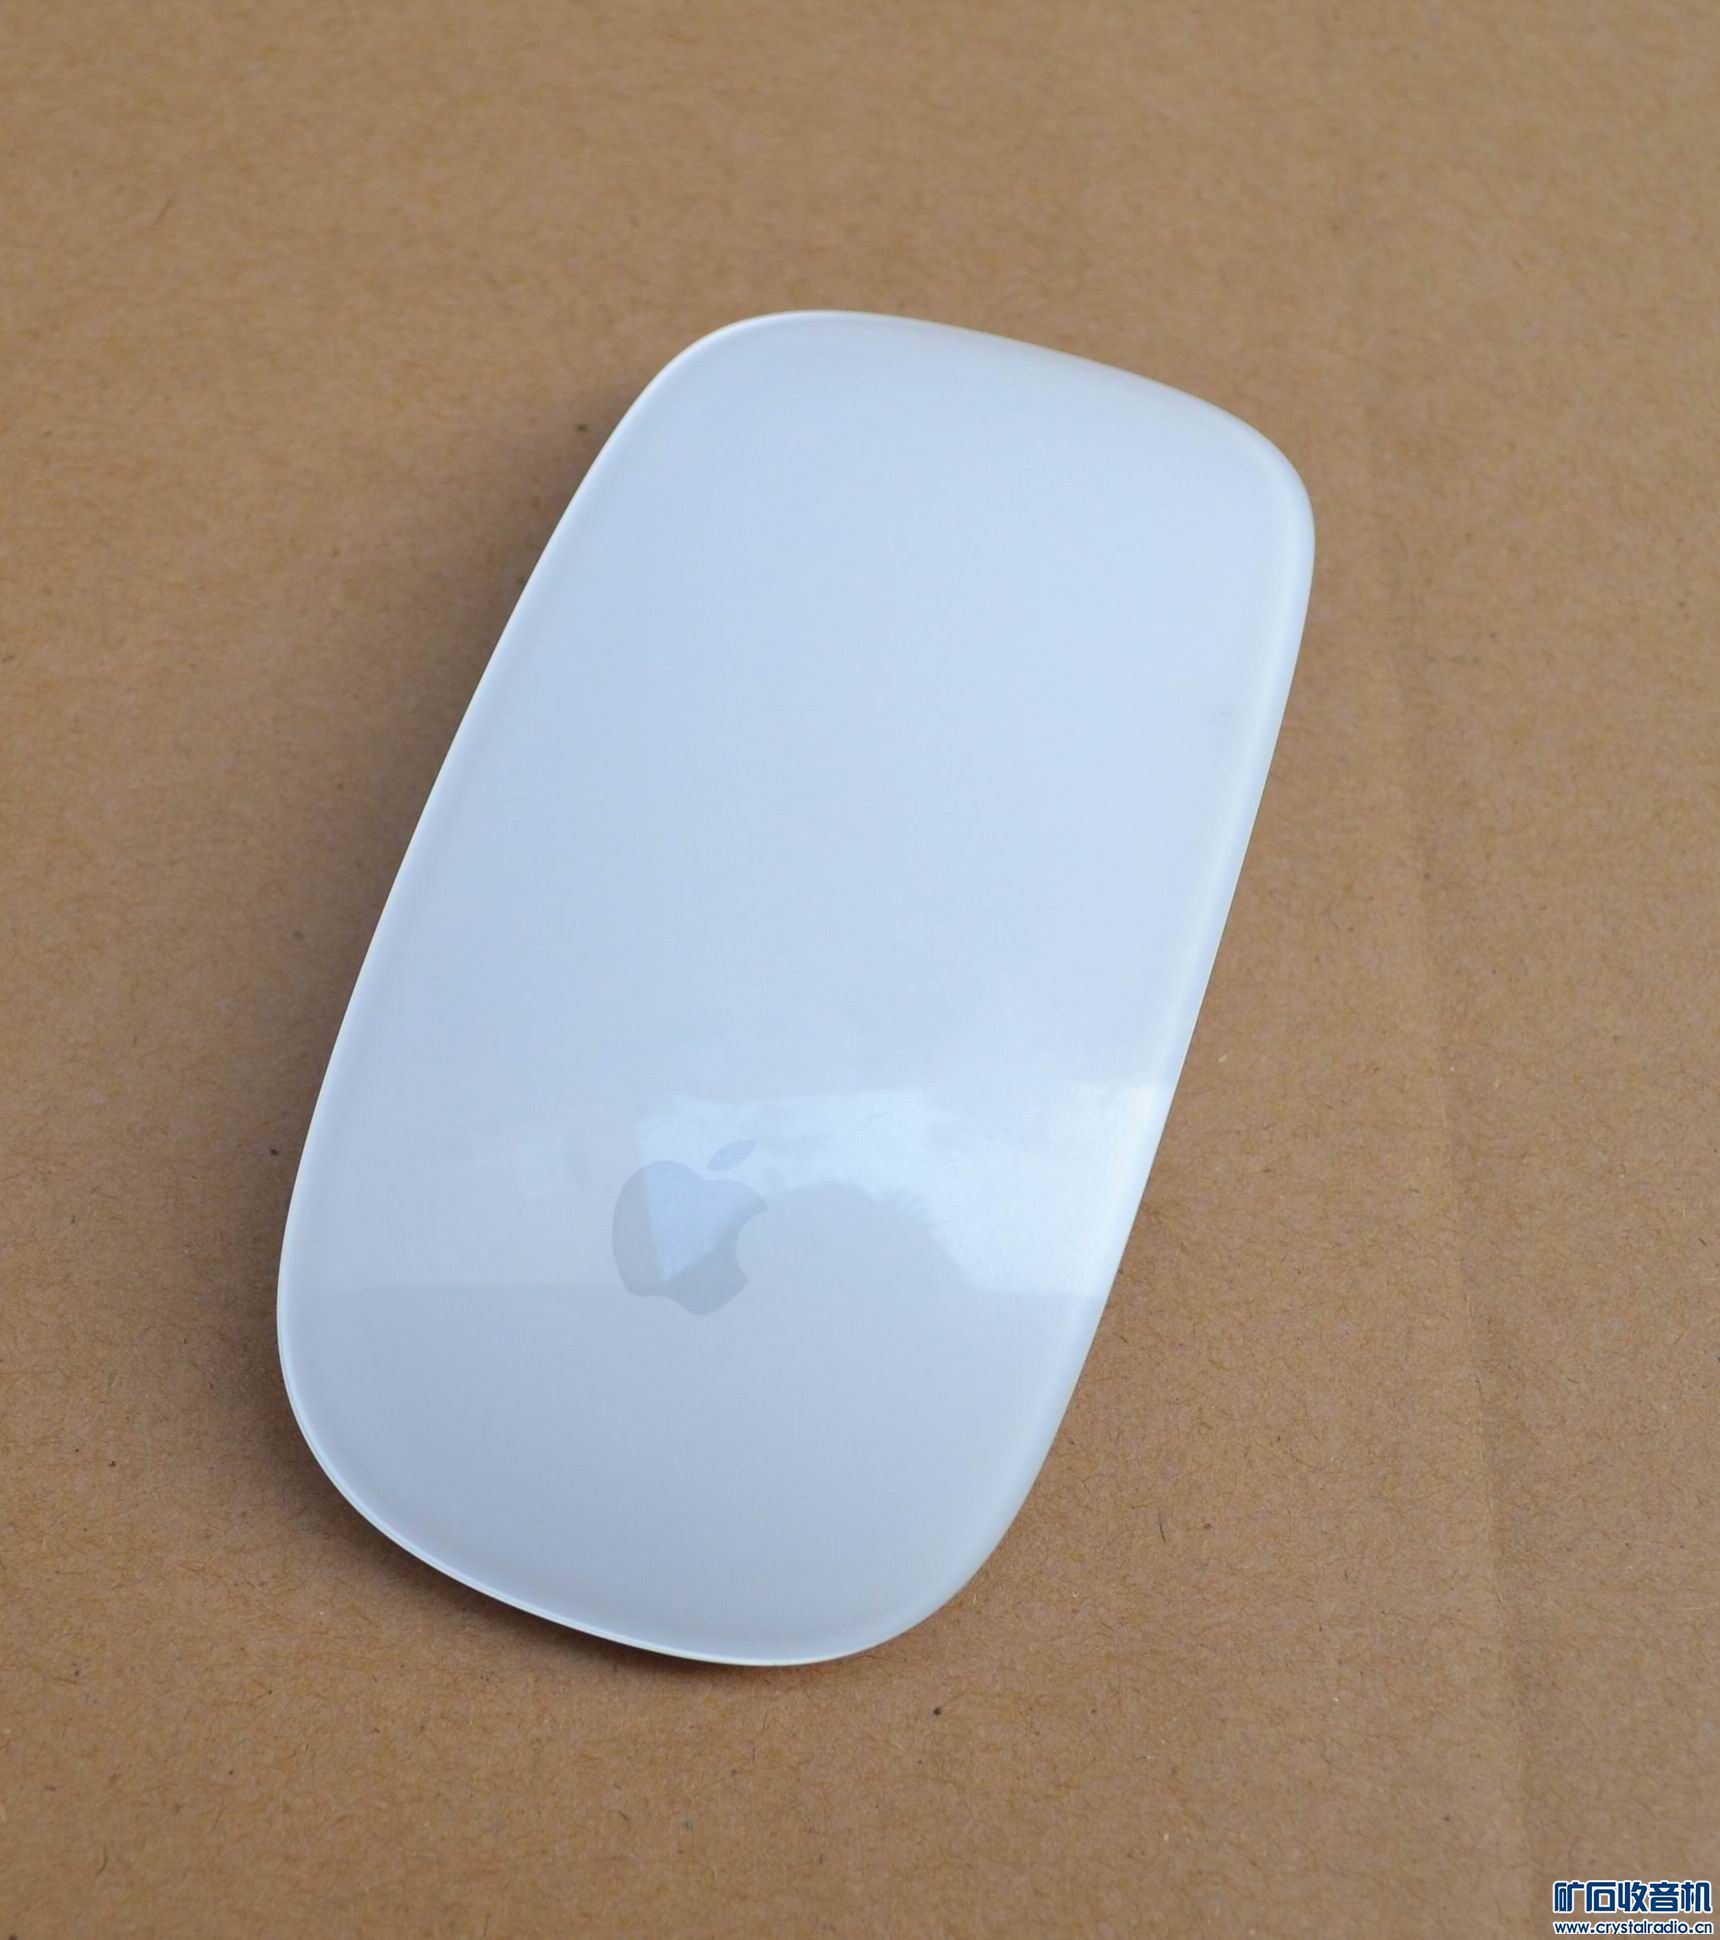 苹果ipad迷你1代平板,苹果无线蓝牙鼠标,小筒镜